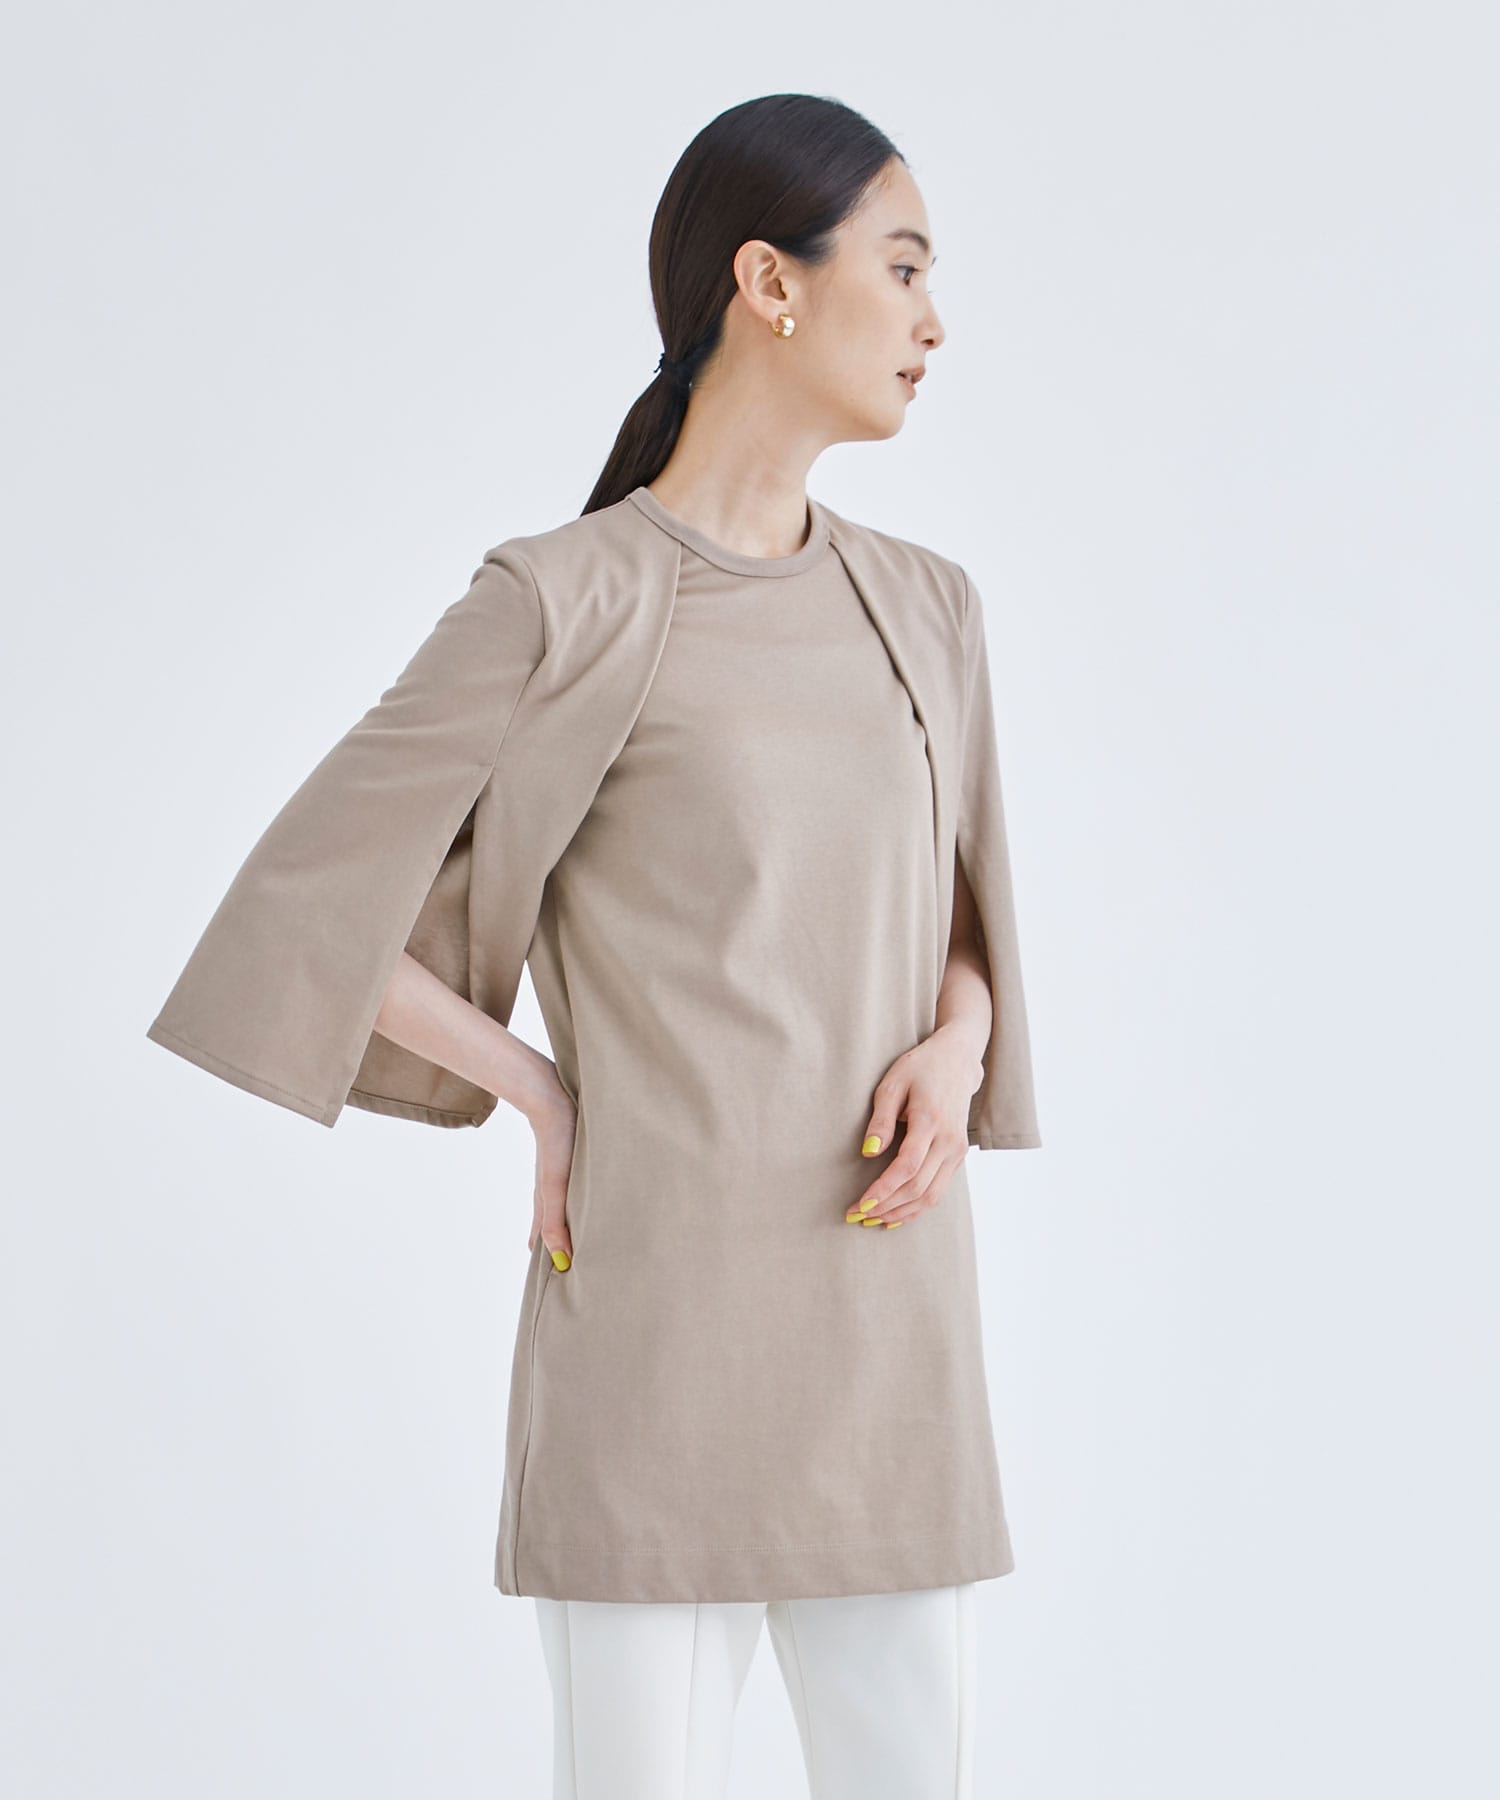 EX.slit sleeve dress Tee